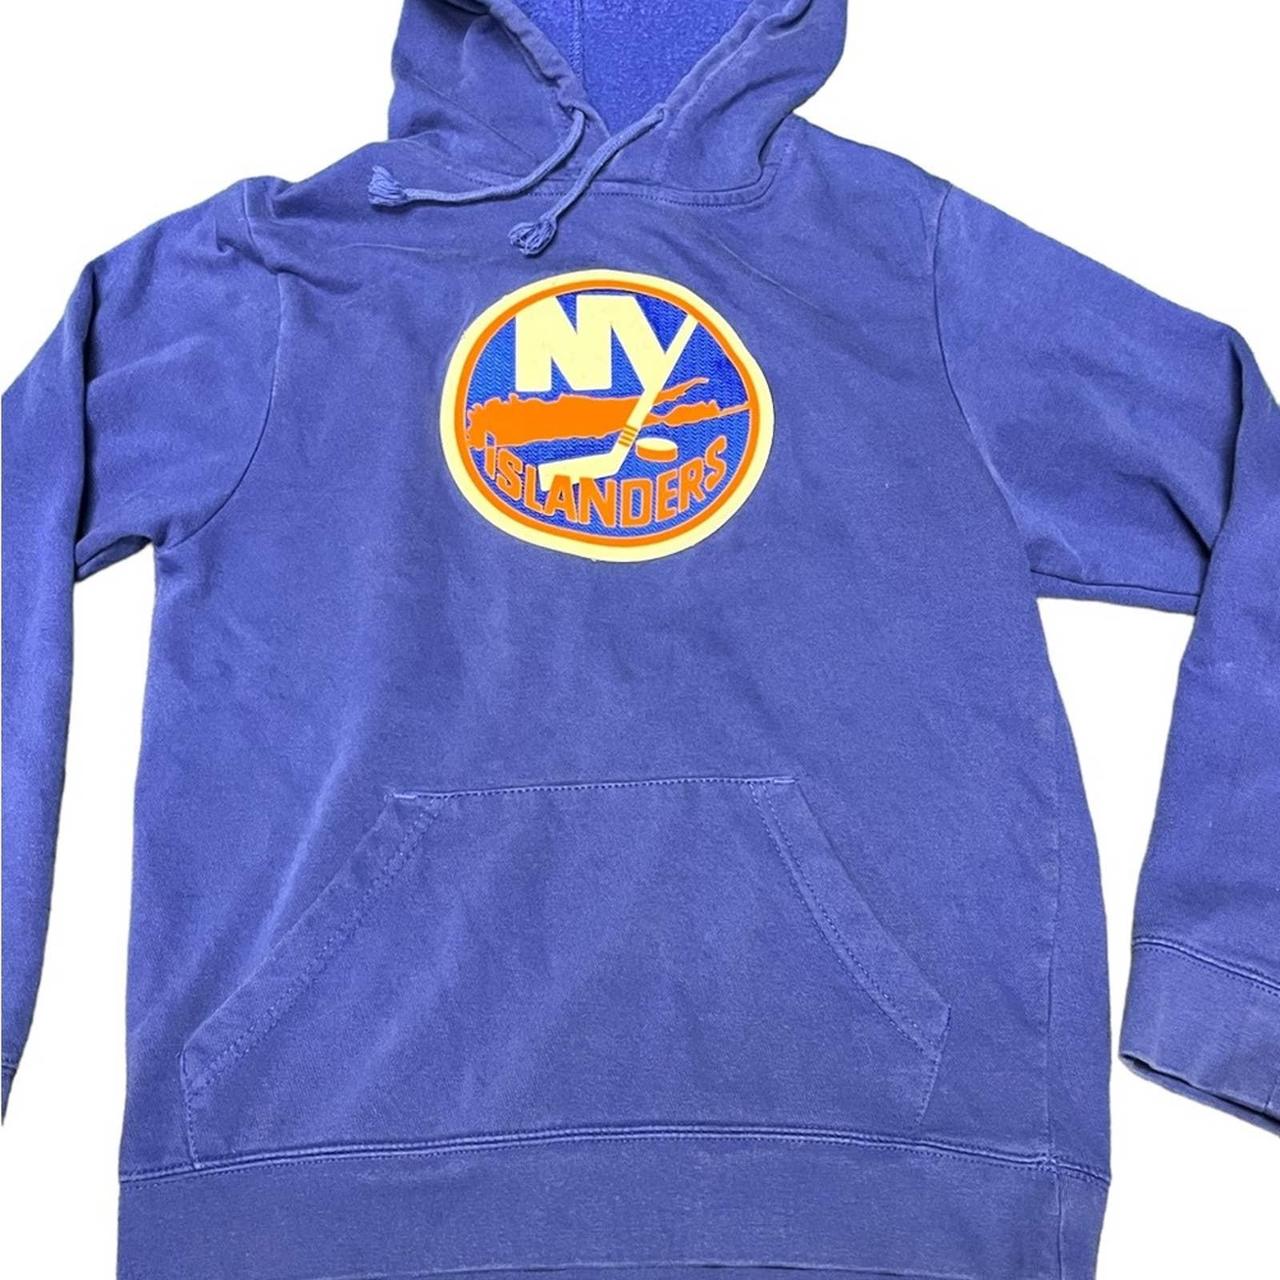 Vintage Majestic New York Islanders sweatshirt in - Depop